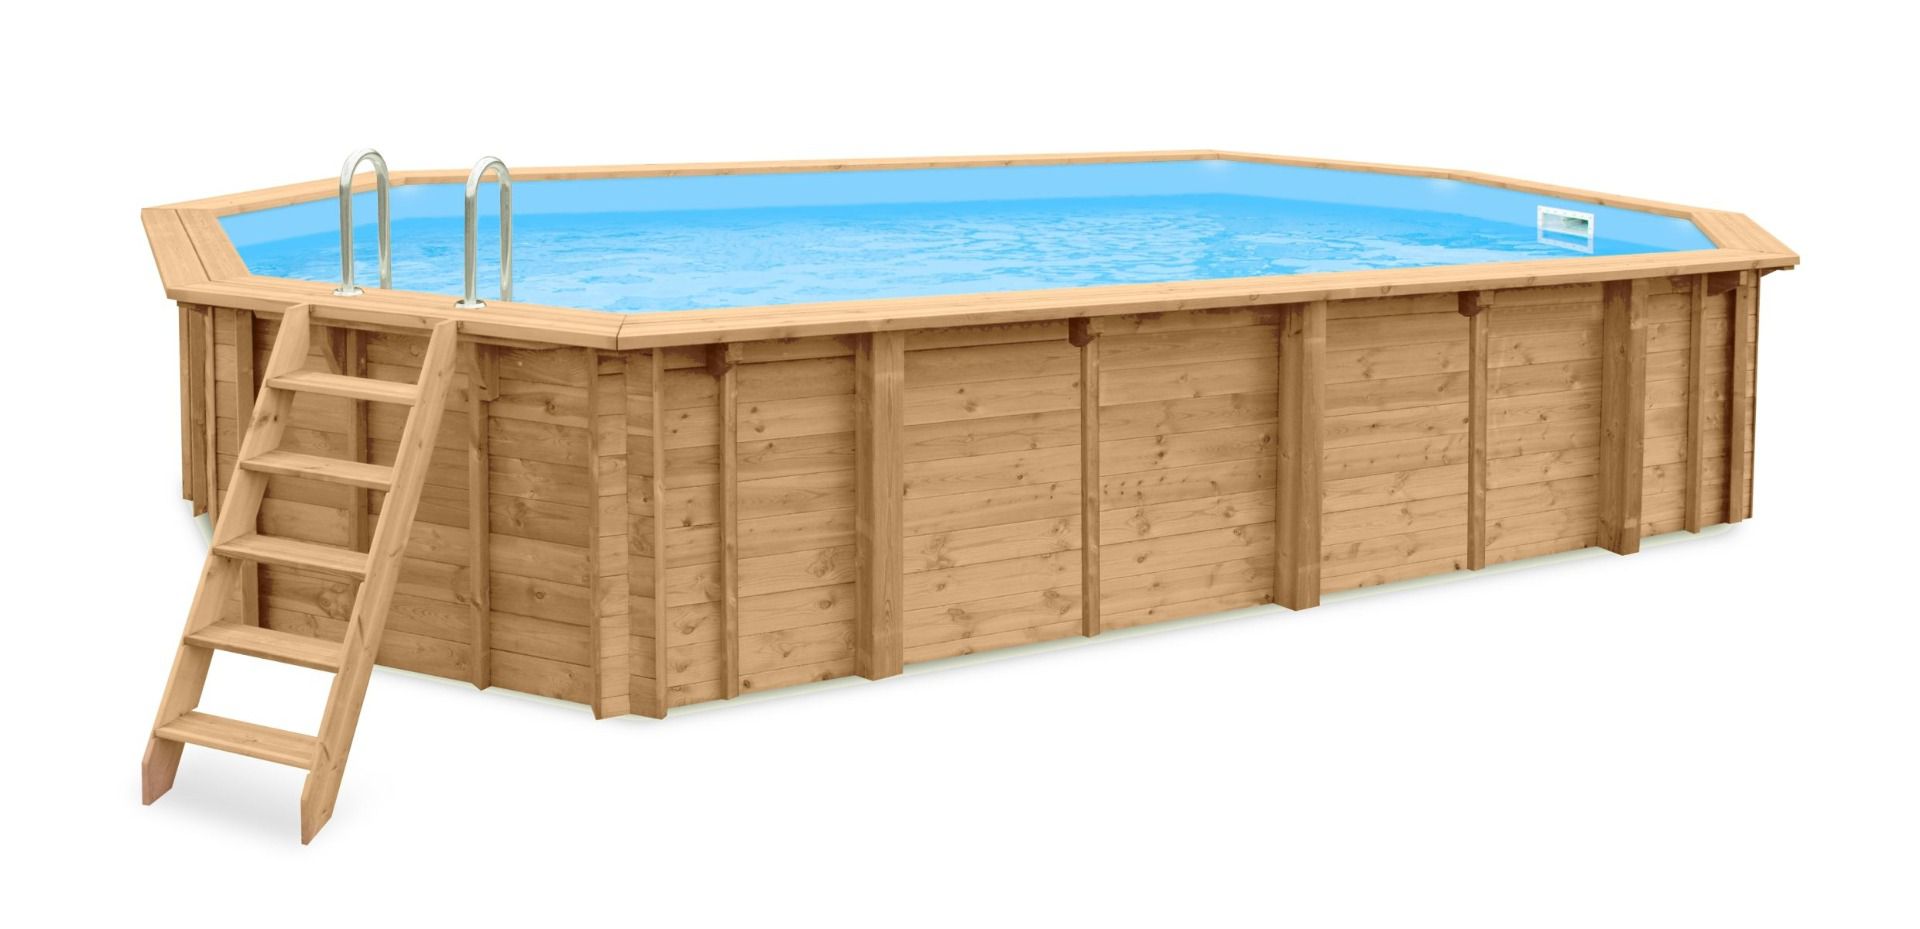 Holz-Pool Sunnydream 07, oval, 8,40 x 4,90 Meter, inklusive Poolleiter, Poolfolie, Boden- und Wandvlies, Edelstahl-Eckverbindungen, langlebig und robust